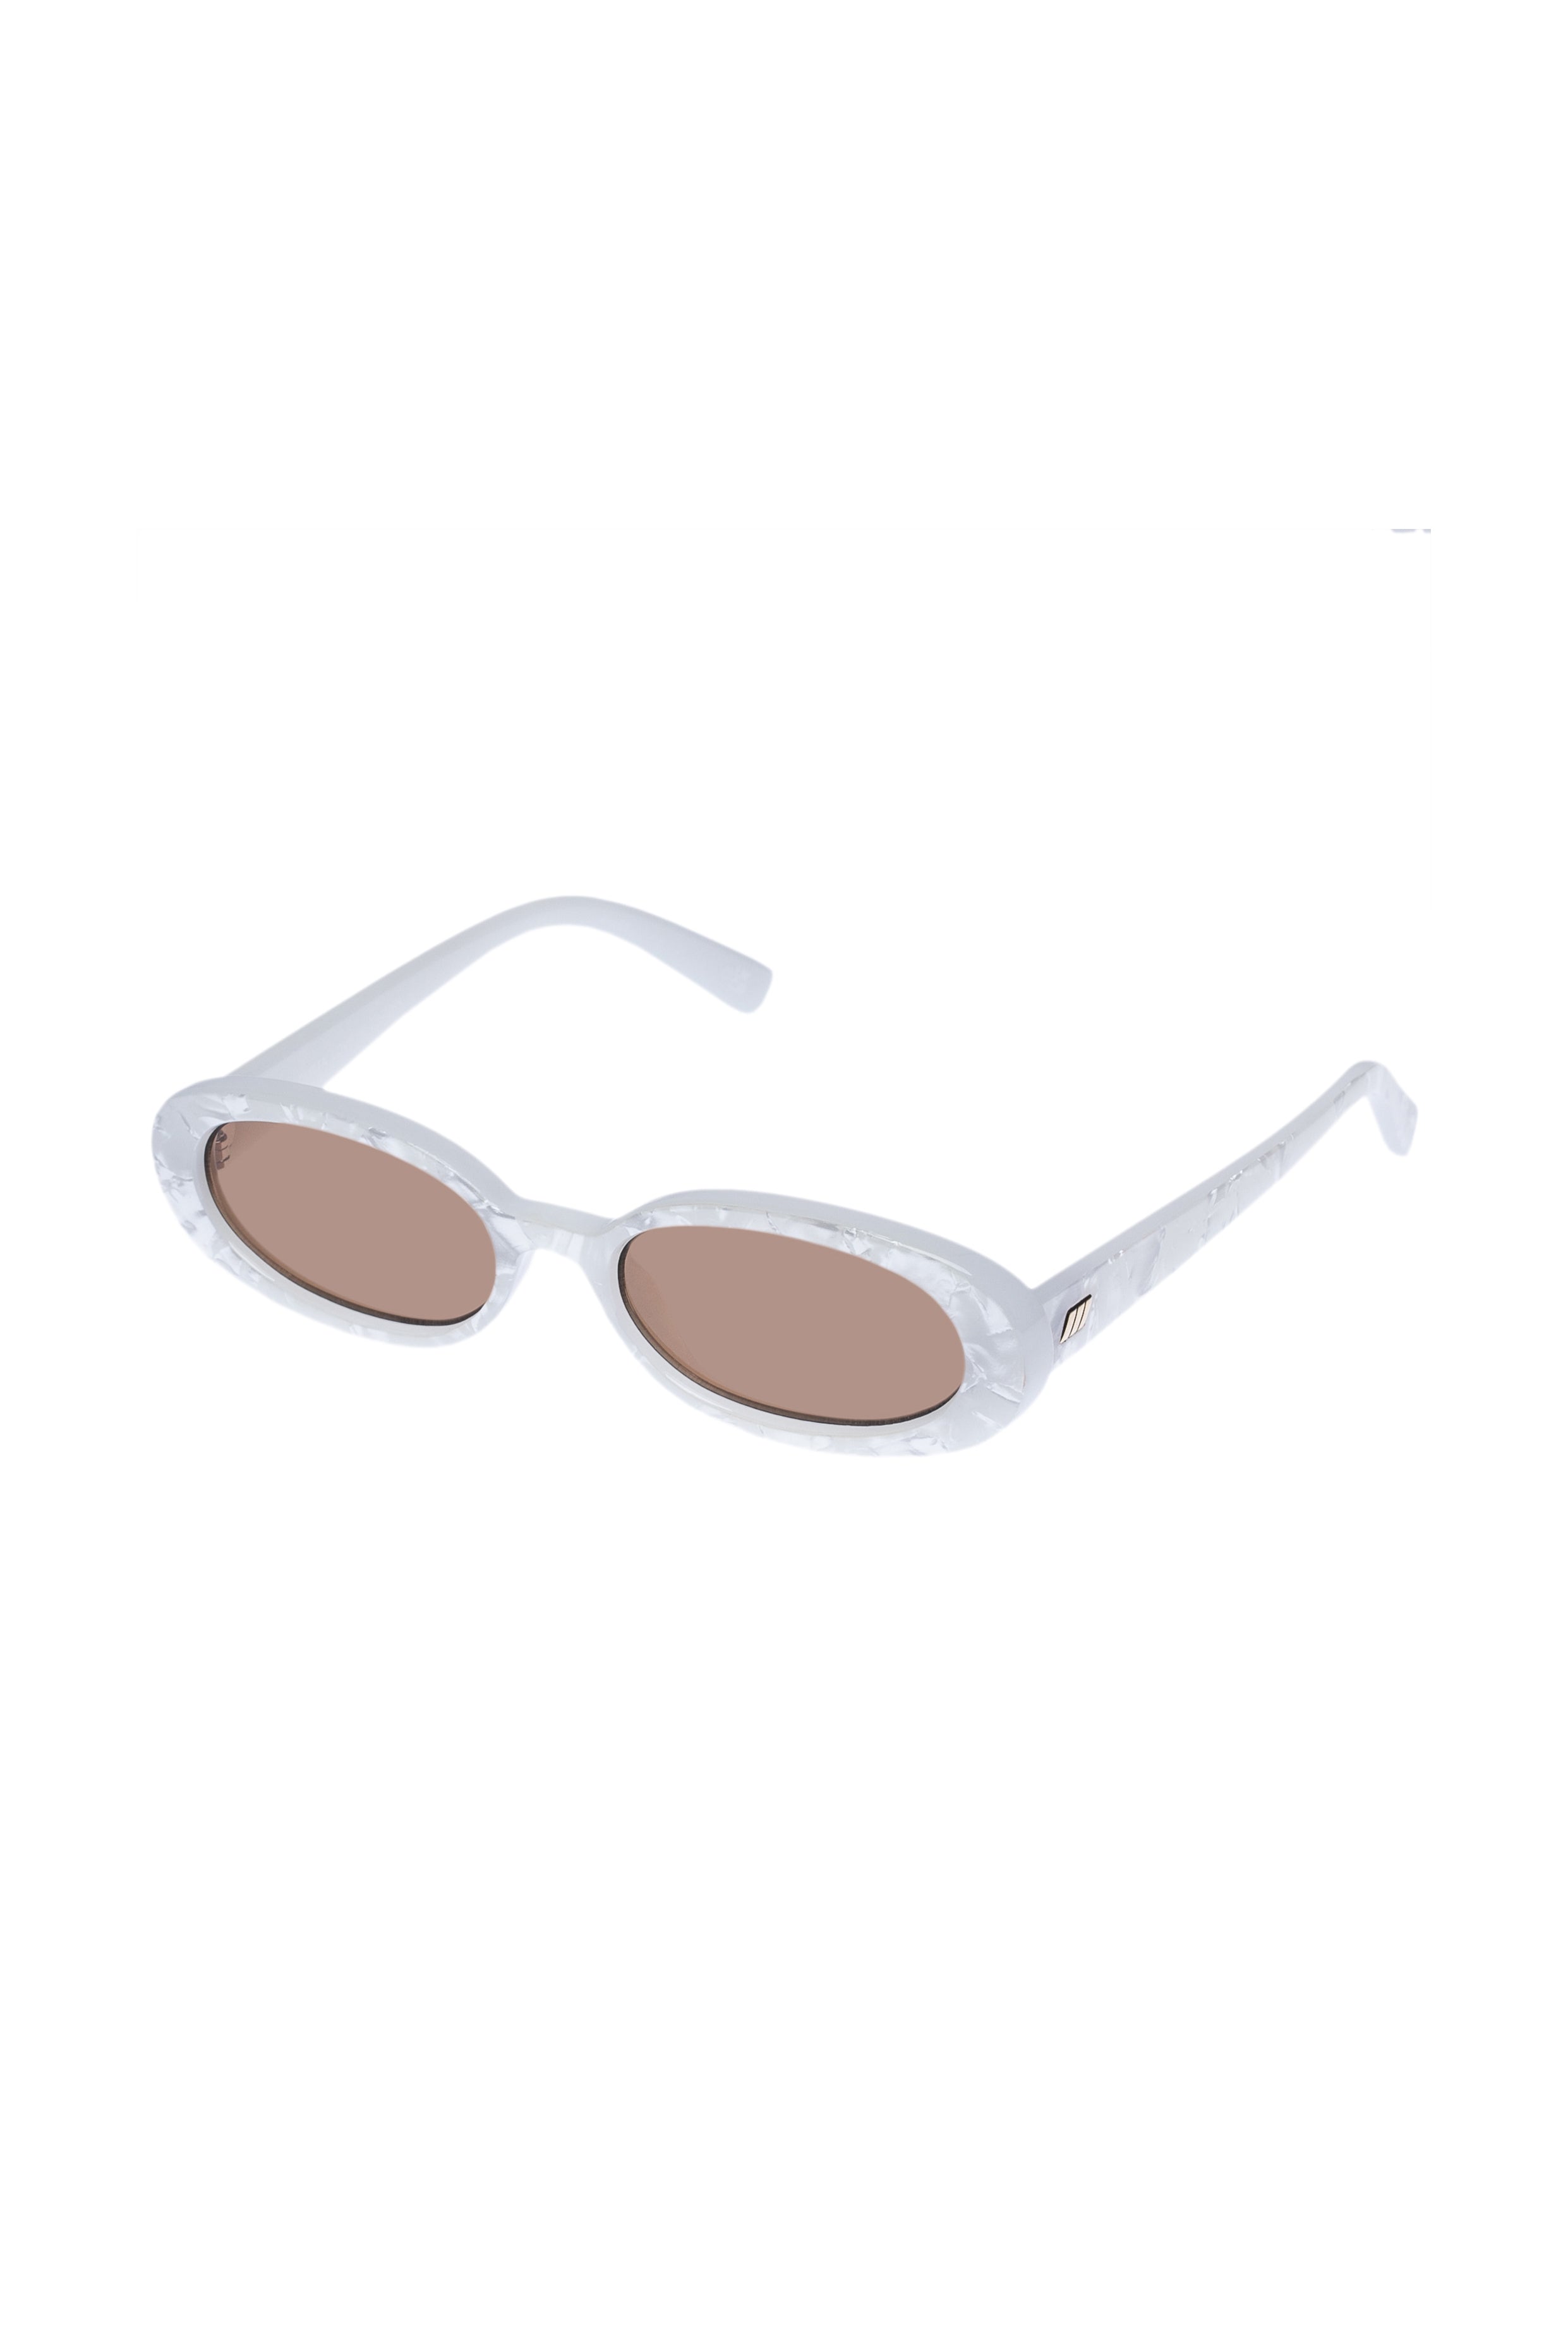 Le Specs Outta Love Sunglasses - White Marble - RUM Amsterdam